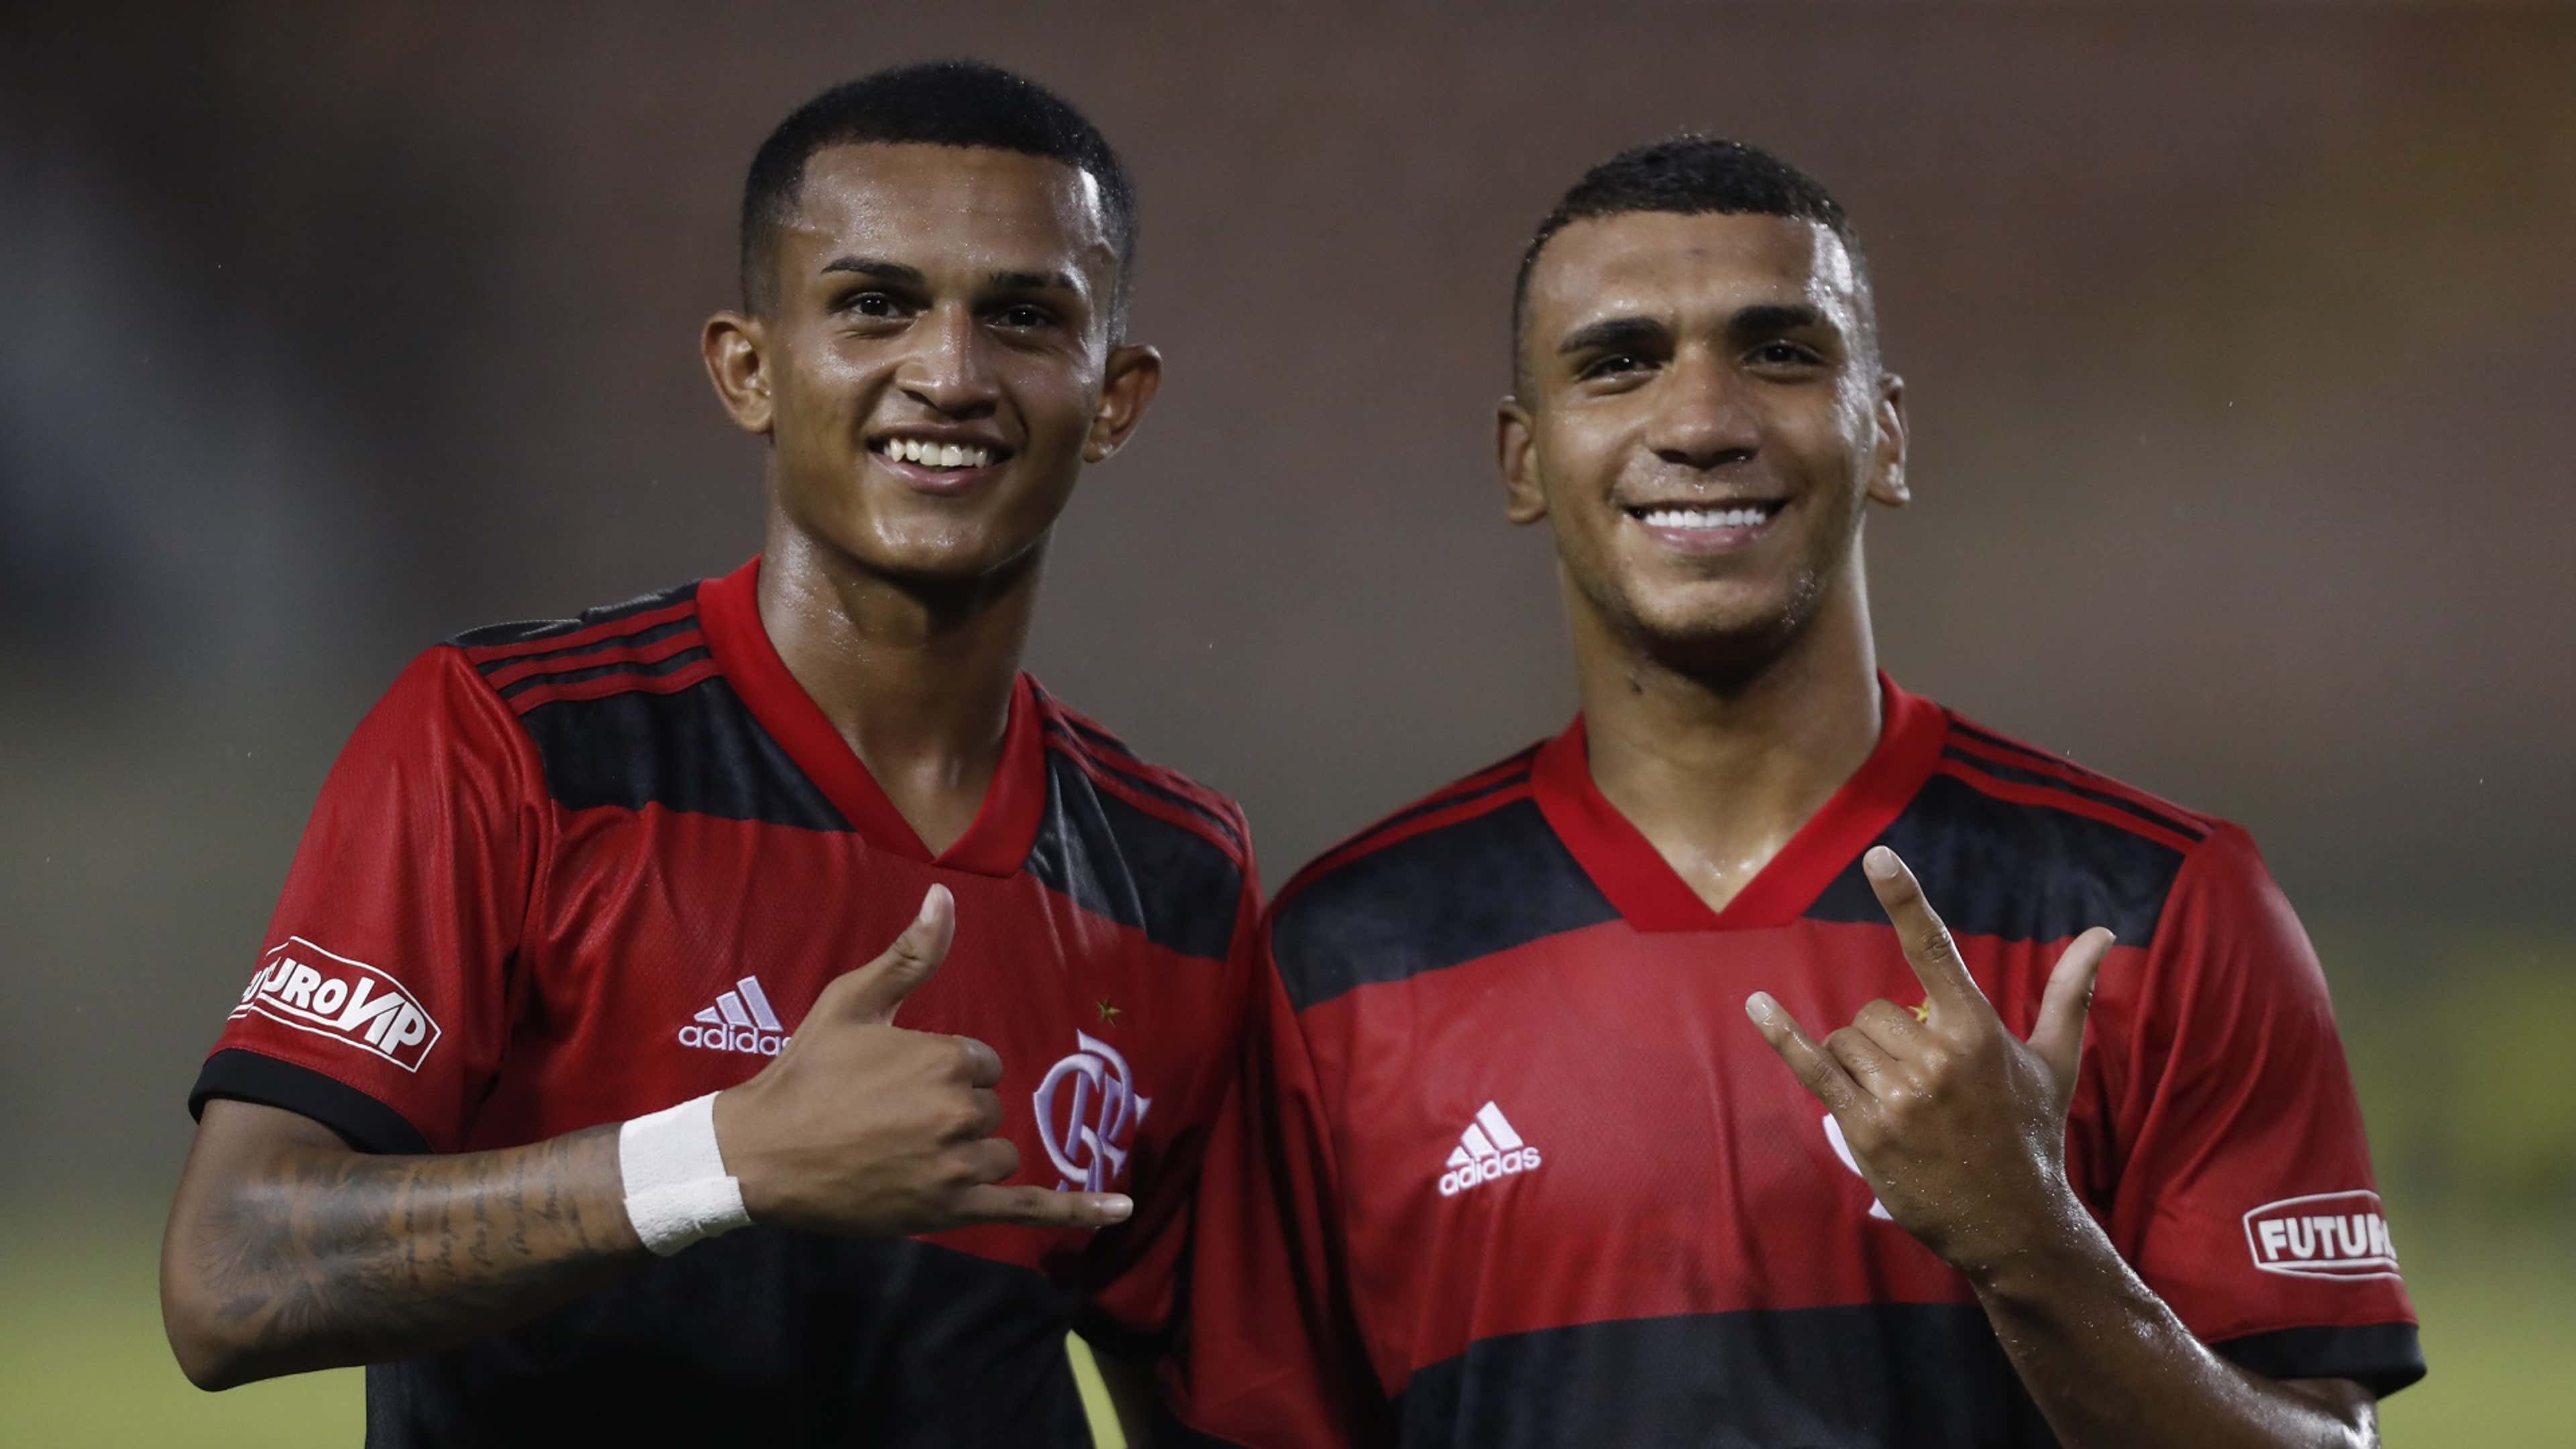 Internacional x Flamengo: onde assistir ao vivo e online, horário